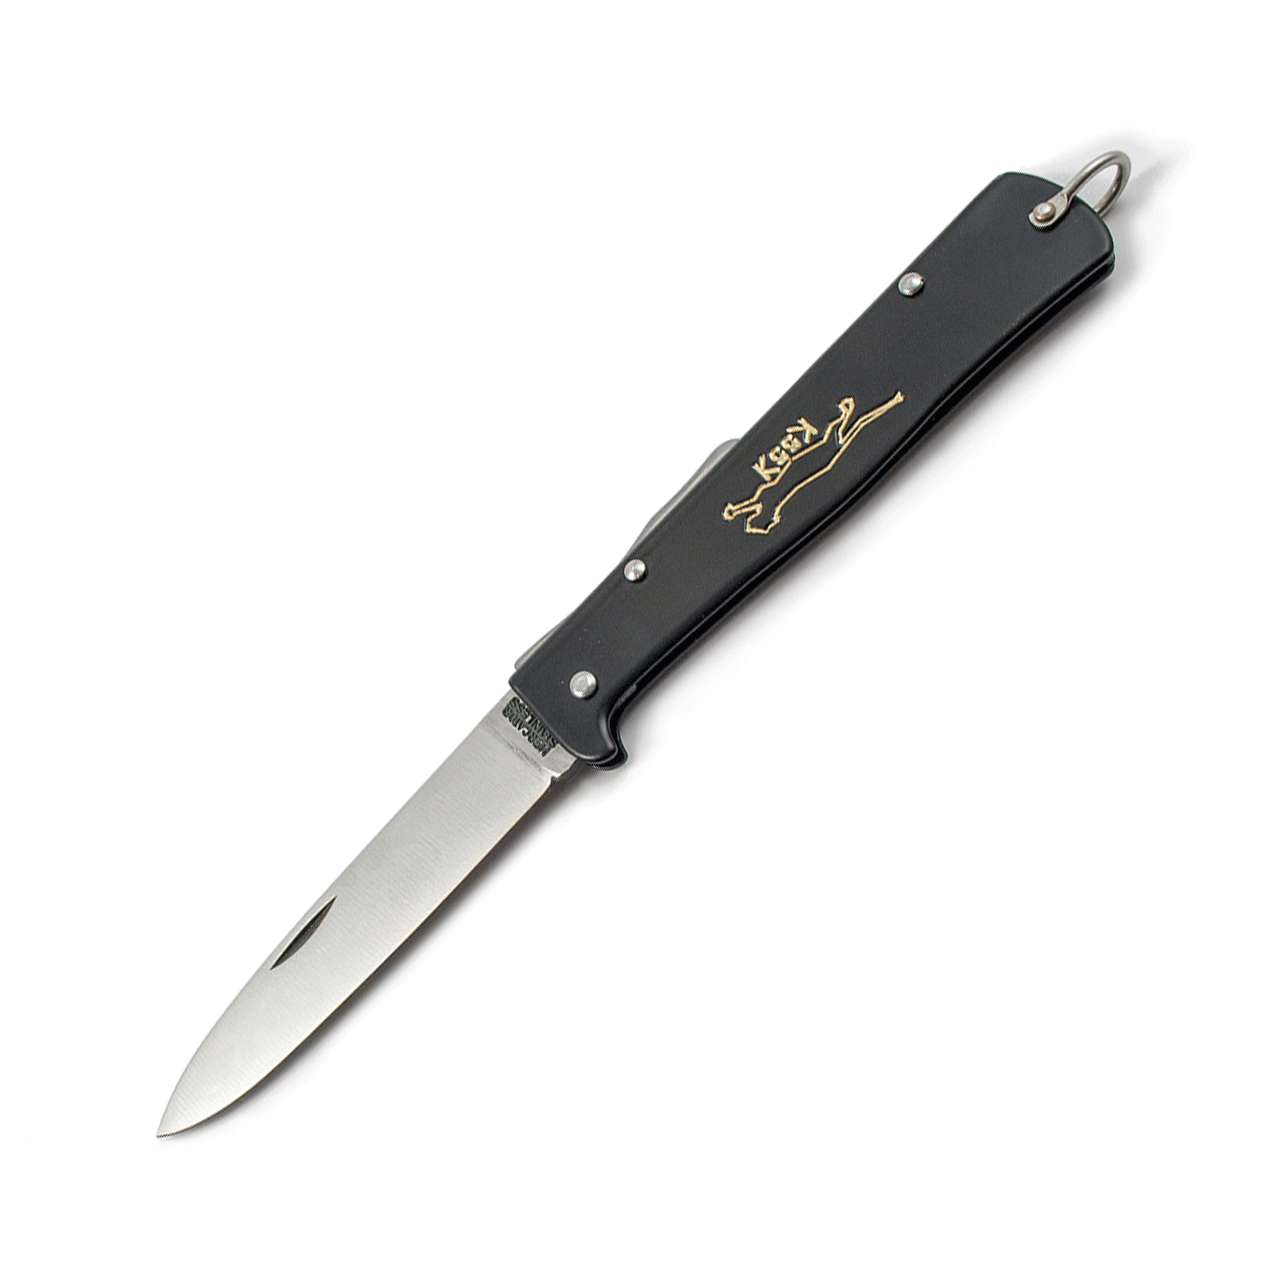 MERCATOR "Black cat knife" K55K